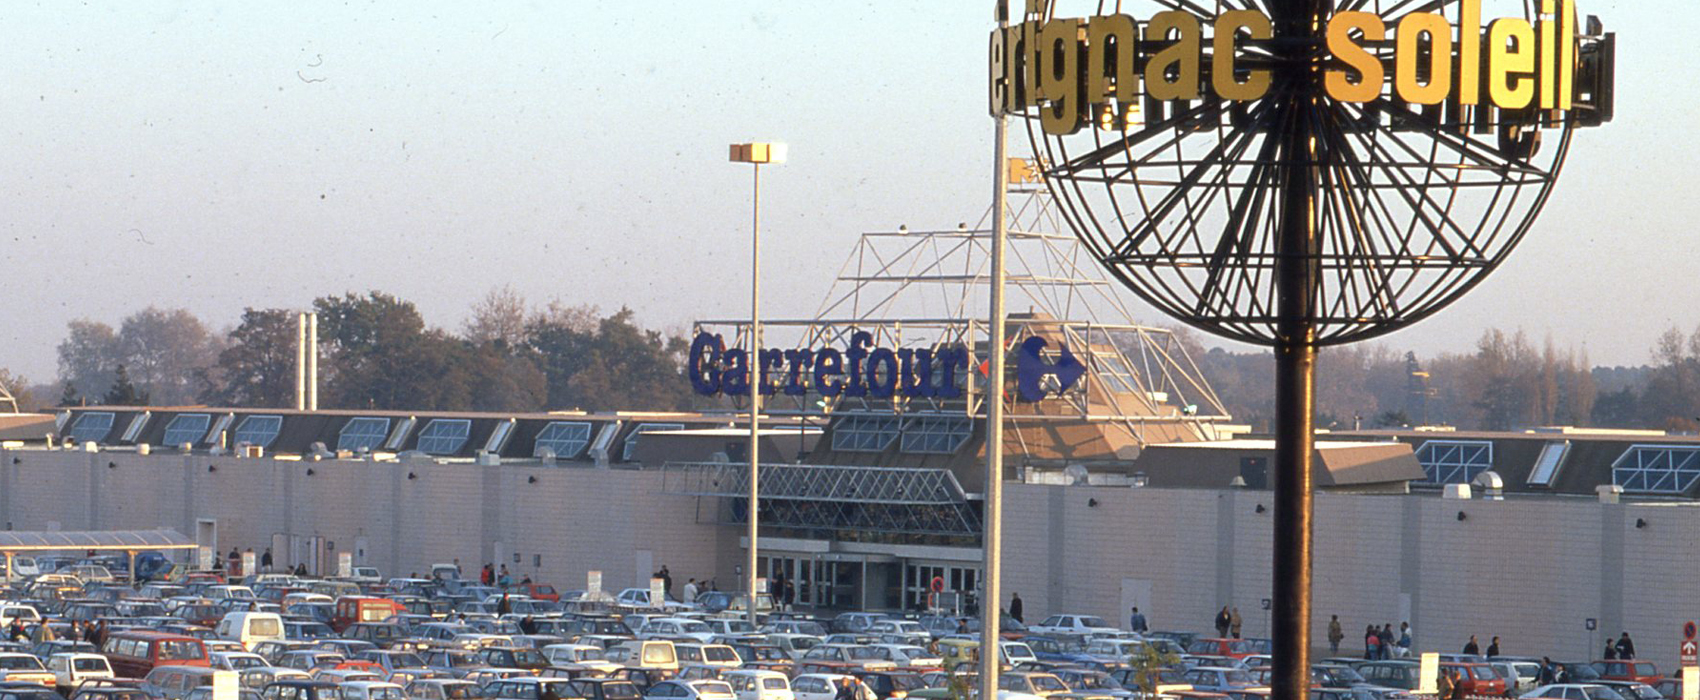 Le centre commercial Mérignac Soleil dans les années 1990